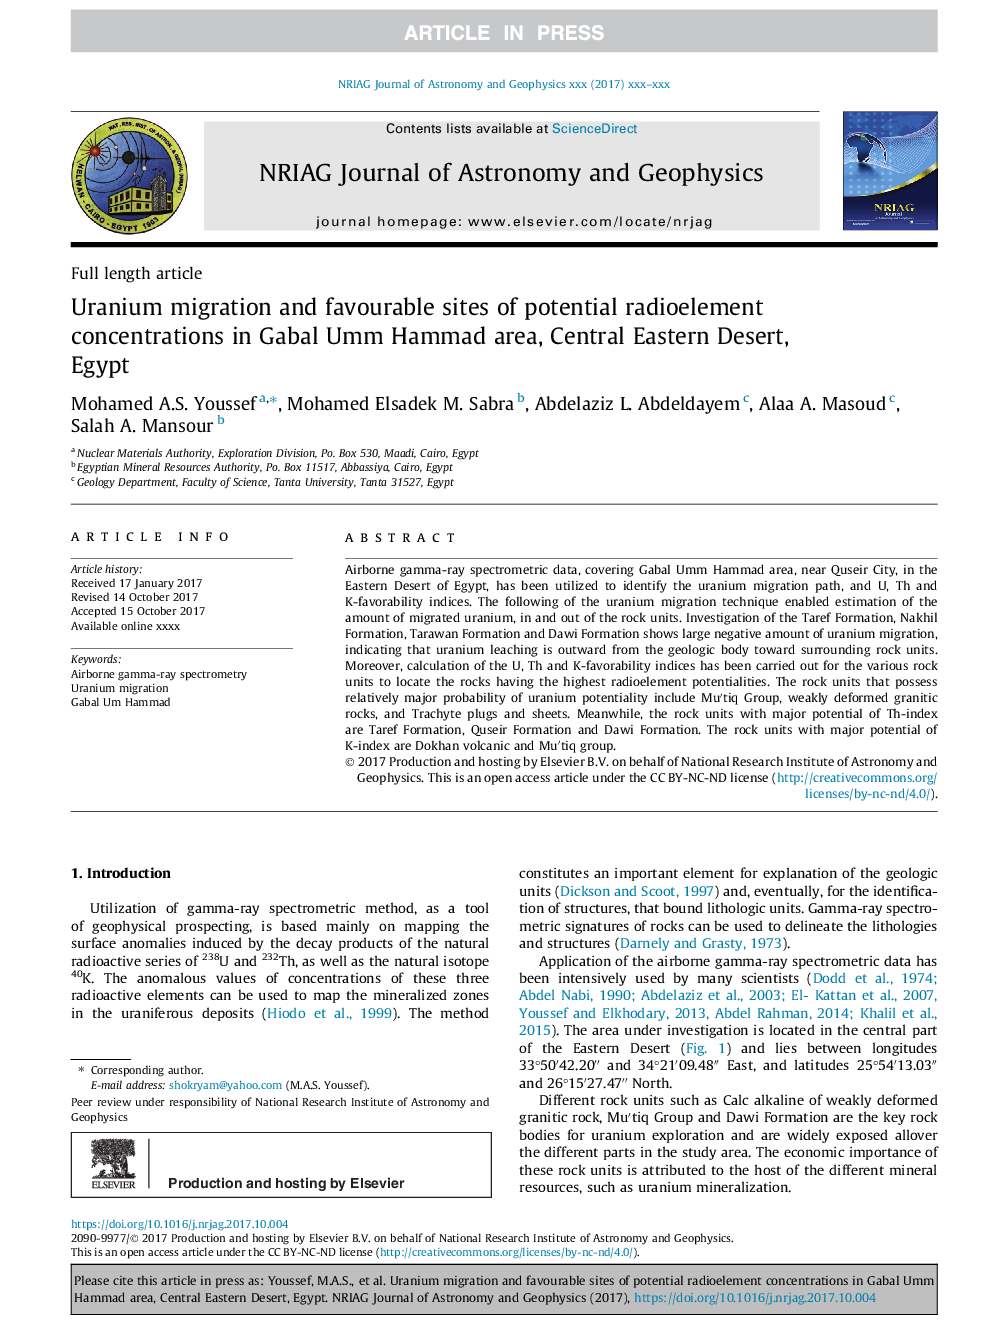 مهاجرت اورانیوم و سایت های مطلوب غلظت های رادیو اکتیو بالقوه در منطقه گابال امهم حمد، کویر مرکزی شرقی، مصر 